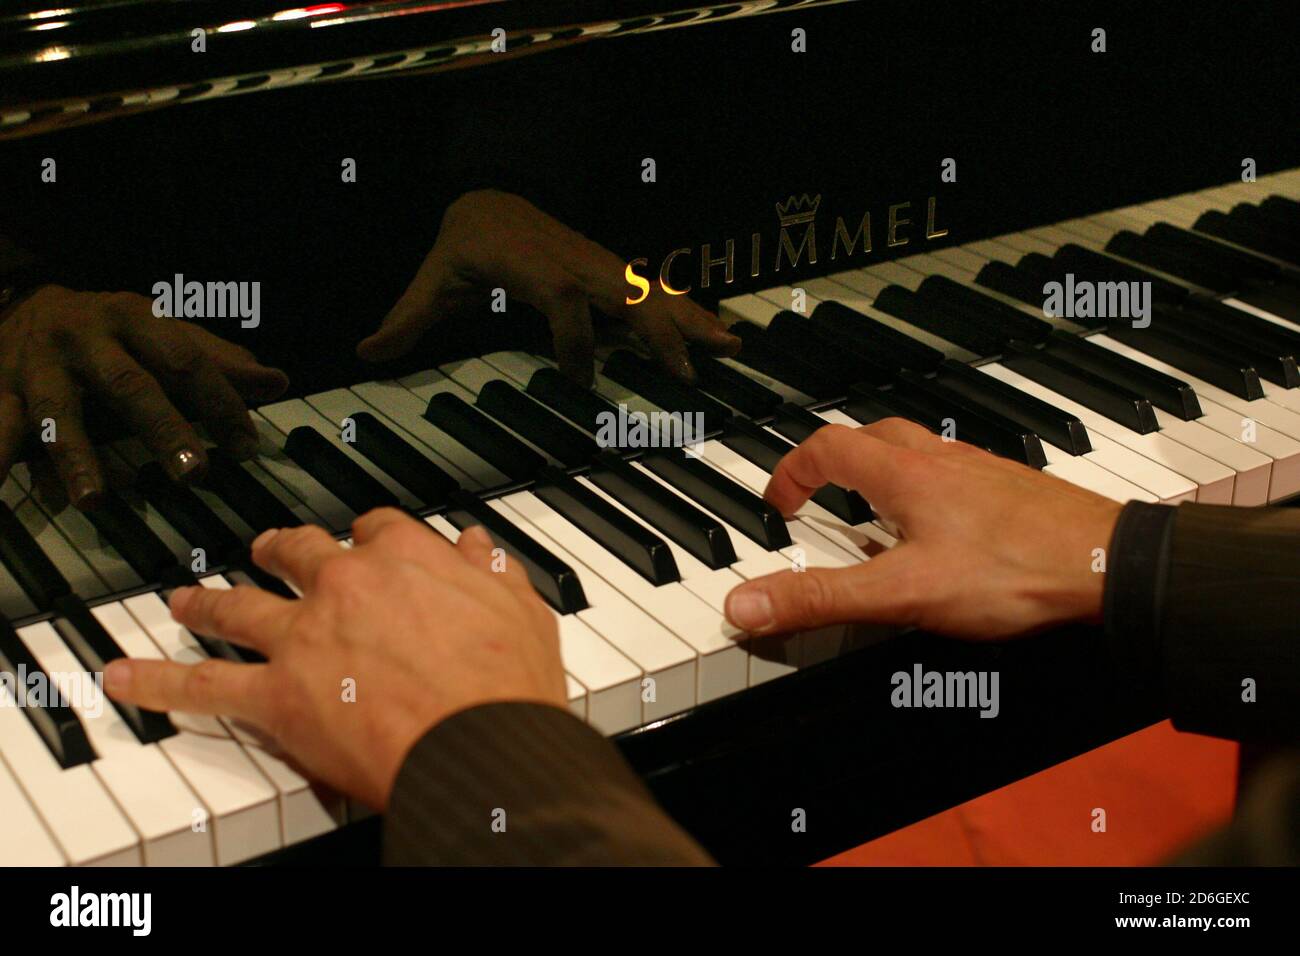 Niedersachsen , Braunschweig. Schimmel Pianofortefabrik. Haende spielen auf  dem Fluegel,Piano,Klavier. [©(c)Ingo Wandmacher, Paul-Gerhardt-Str.1, 236  Stock Photo - Alamy